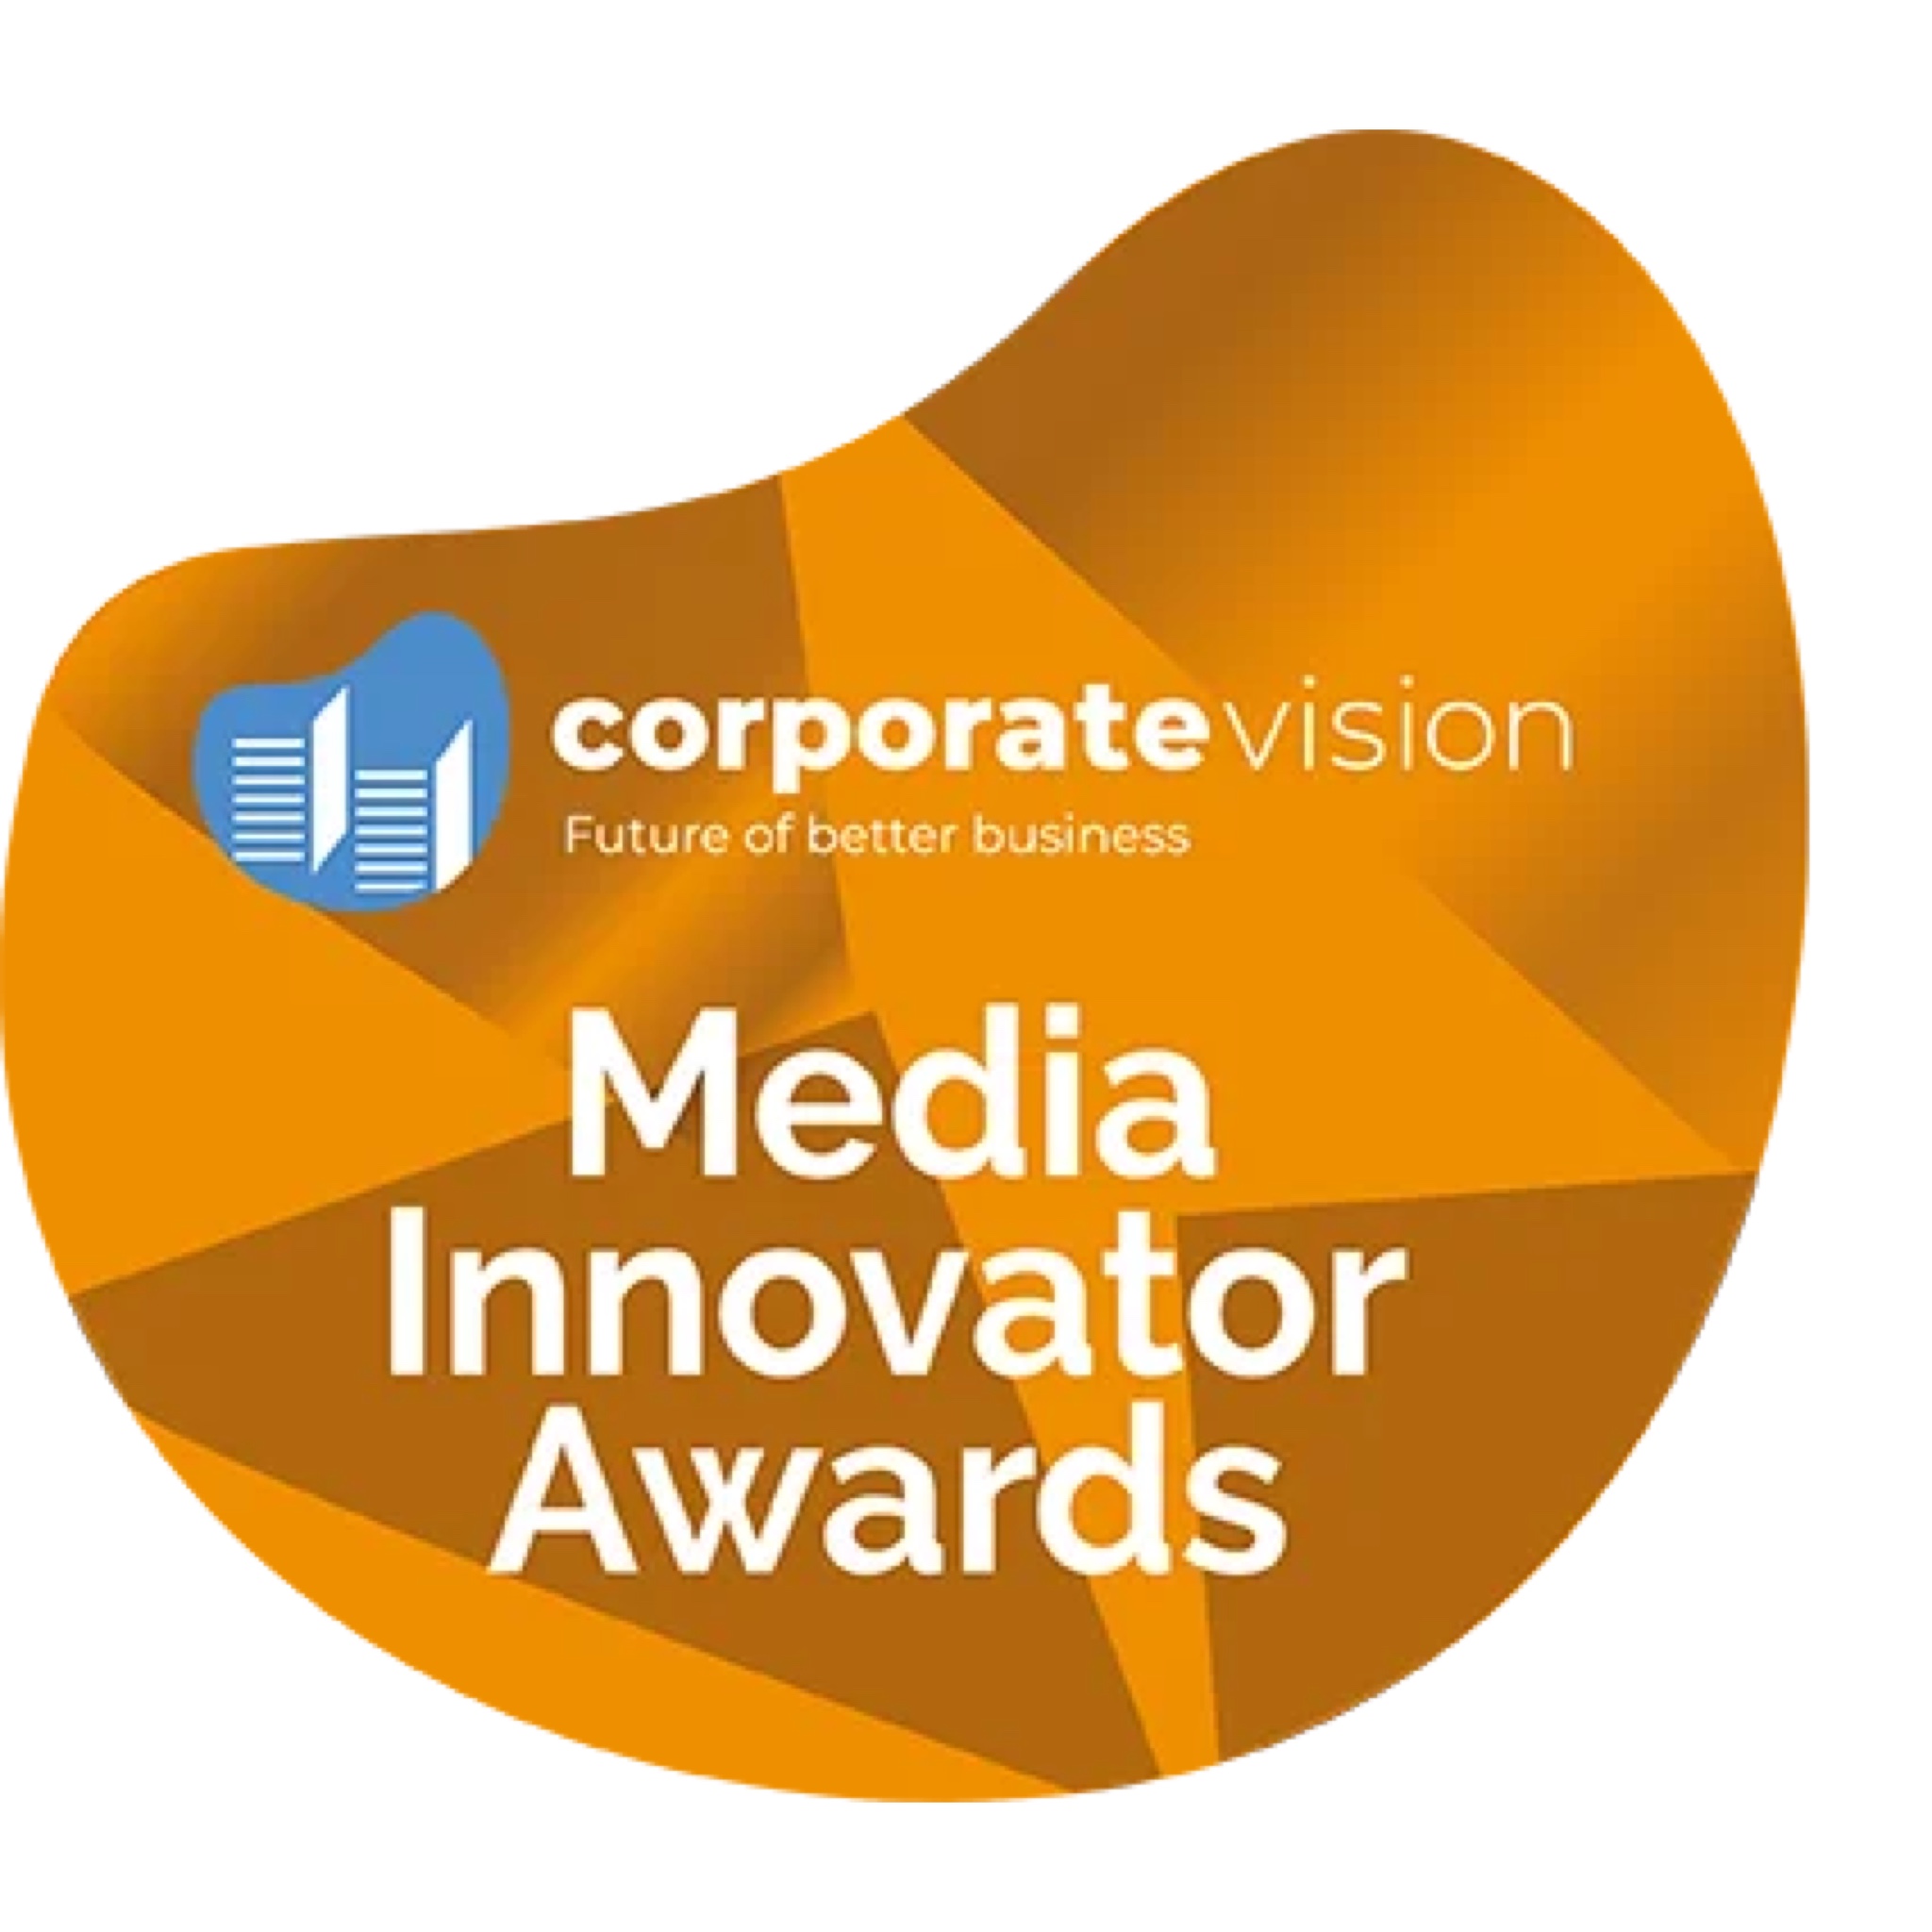 L'agenzia Altered State Productions di United States ha vinto il riconoscimento Media Innovator Awards - Corporate Vision